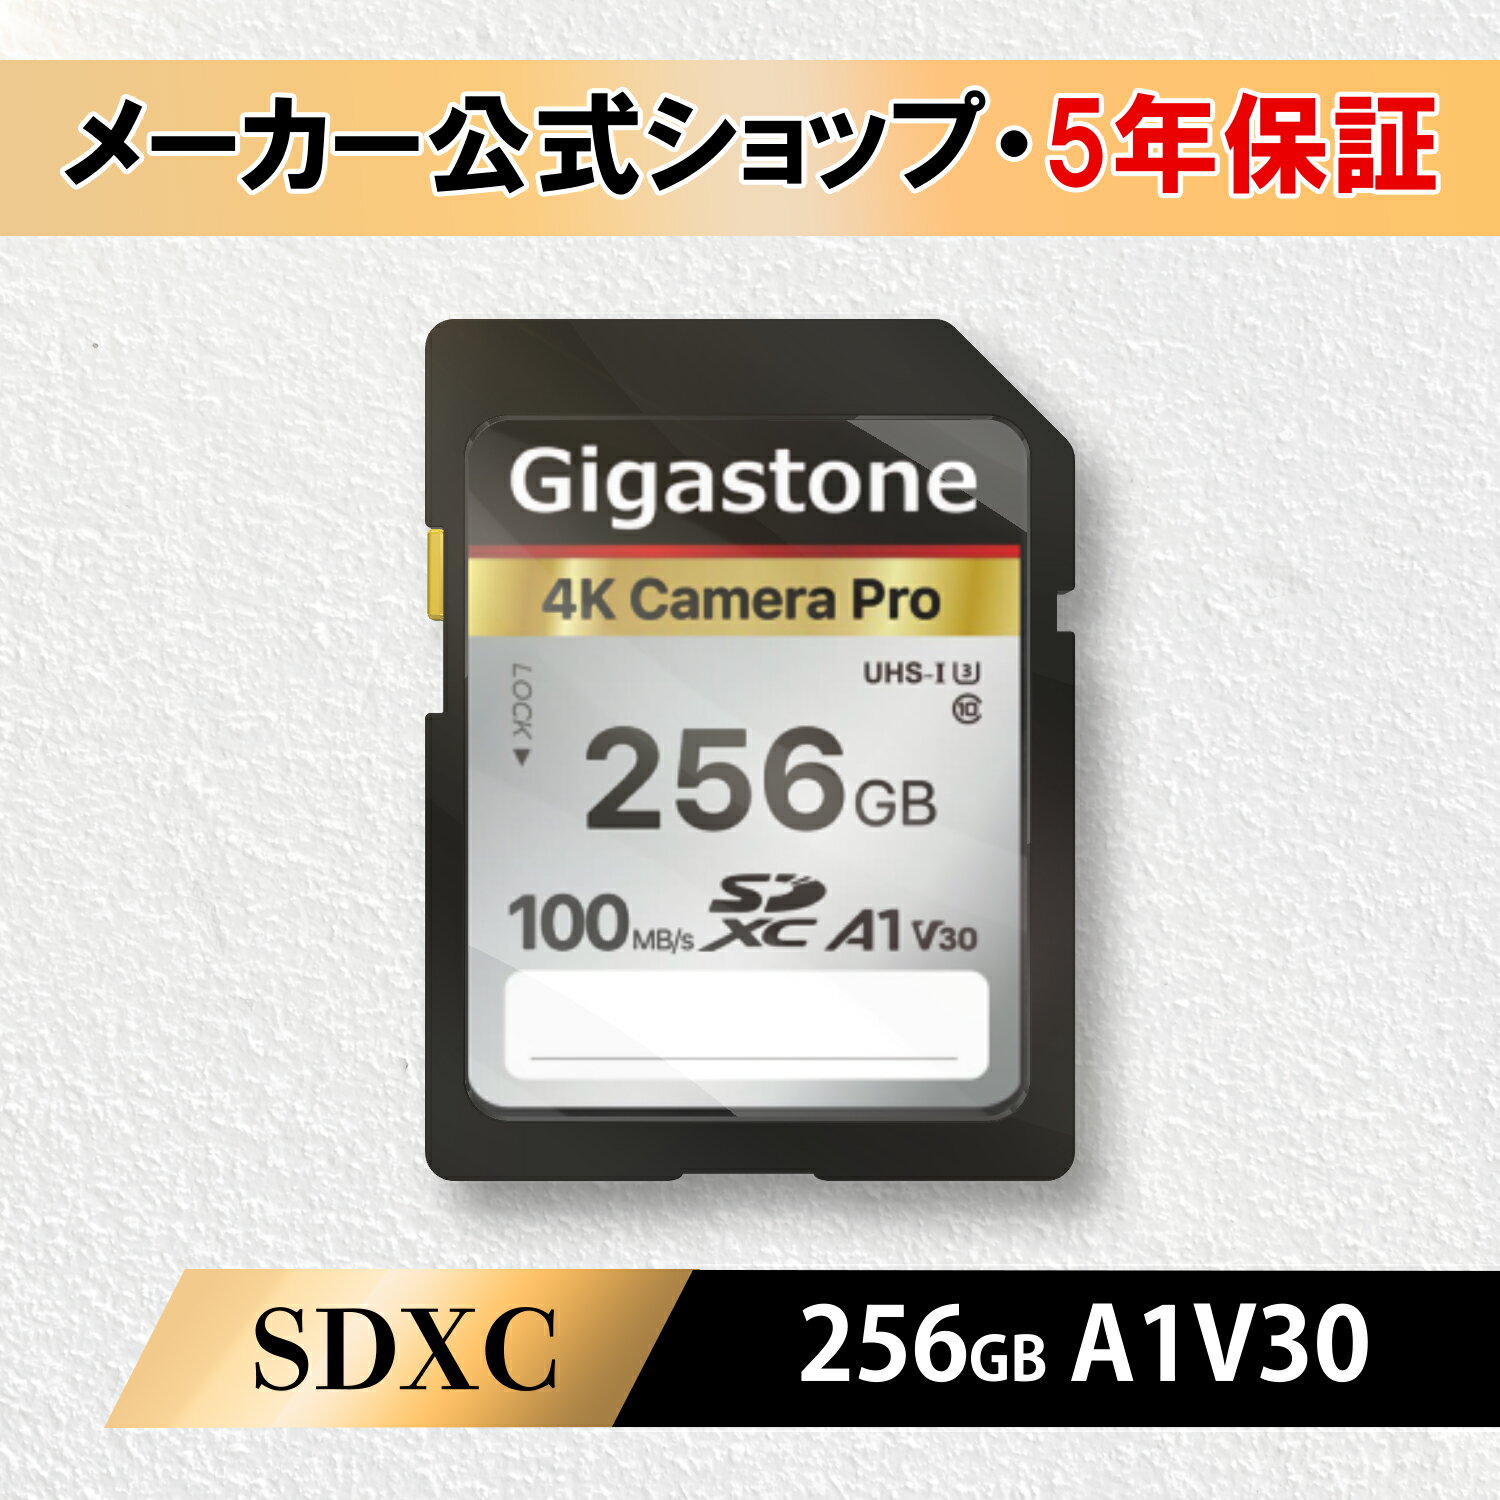 【保証5年】Gigastone SDカード 256GB SDXC メモリーカード UHS-I U3 クラス10 ビデオカメラ sdカード 超高速 100MB/s SDXC 4K Ultra H..